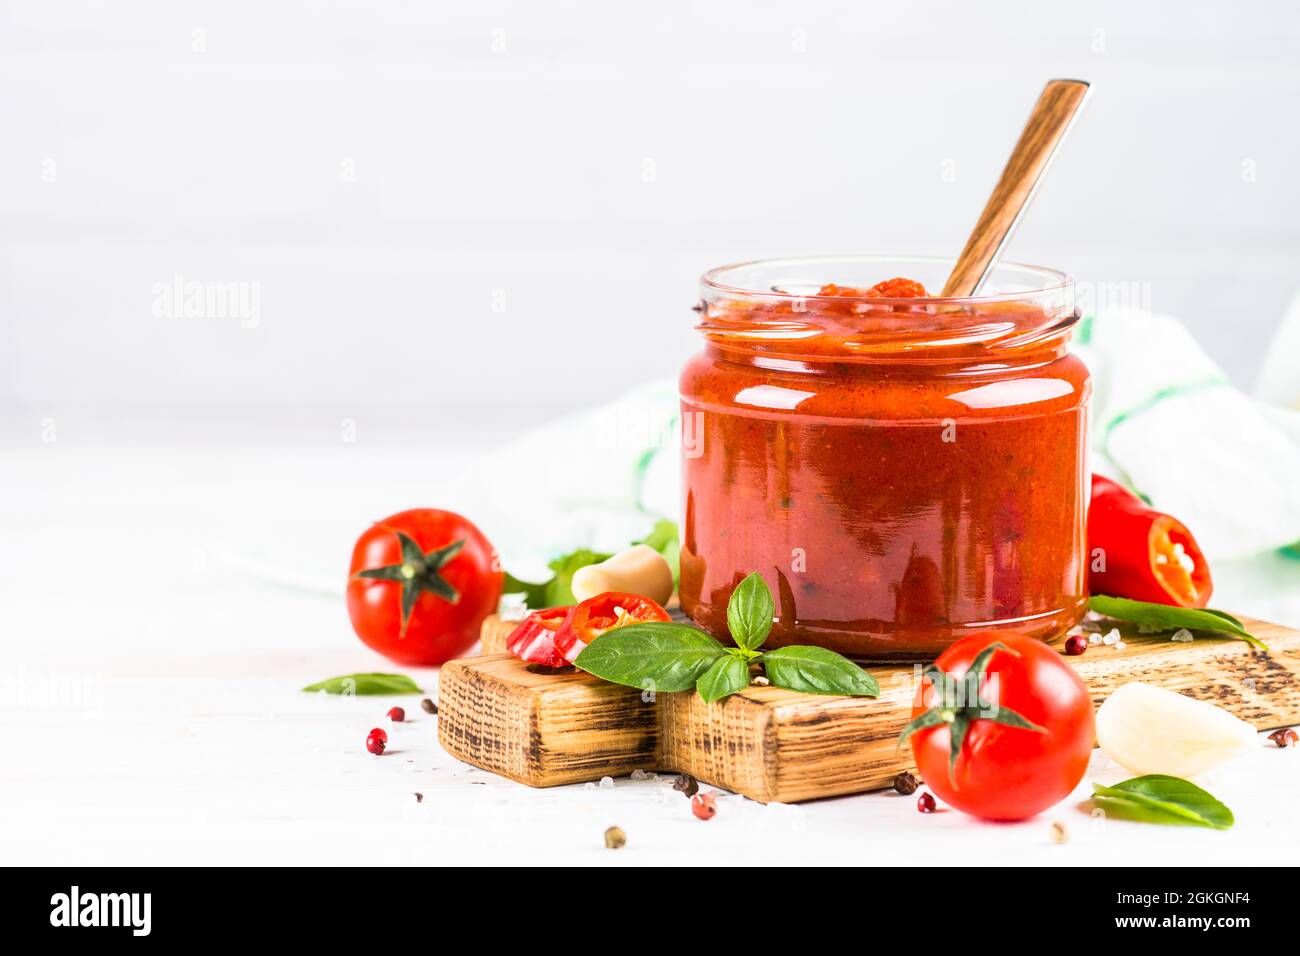 Tomatensauce mit Kräutern und Gewürzen auf weißem Hintergrund. Stockfoto